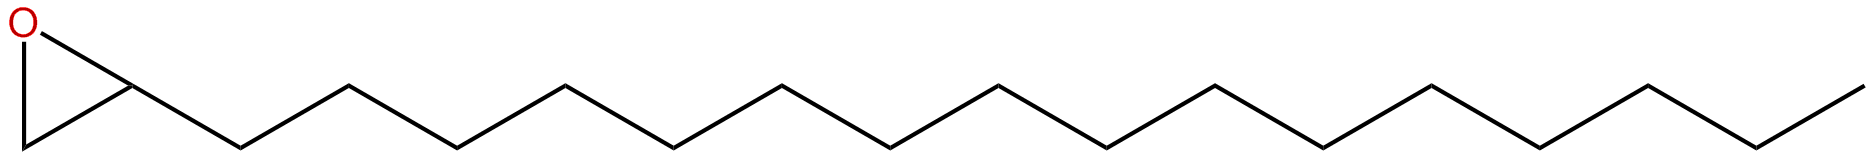 Image of hexadecyloxirane